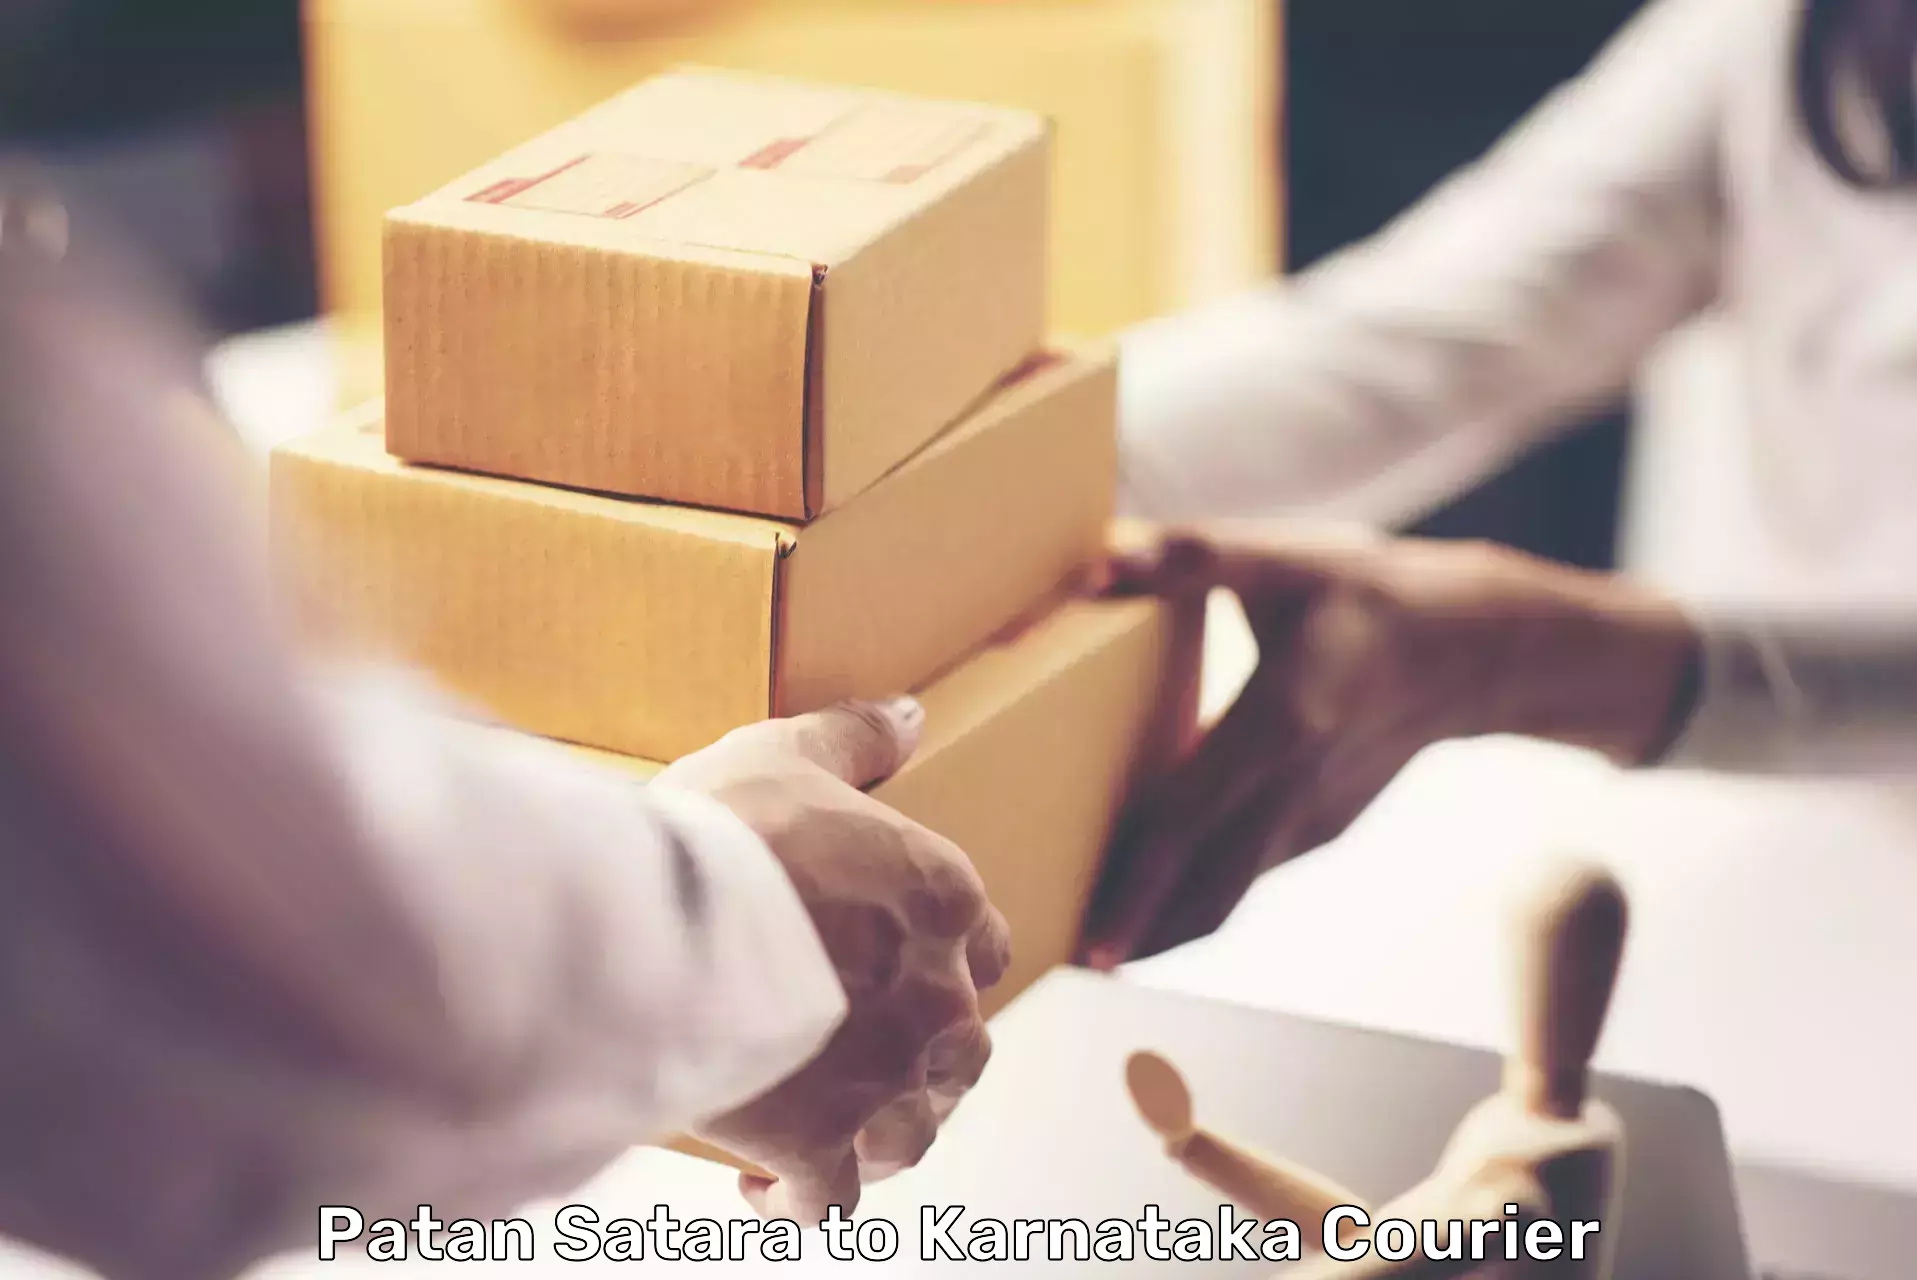 Large package courier Patan Satara to Karnataka